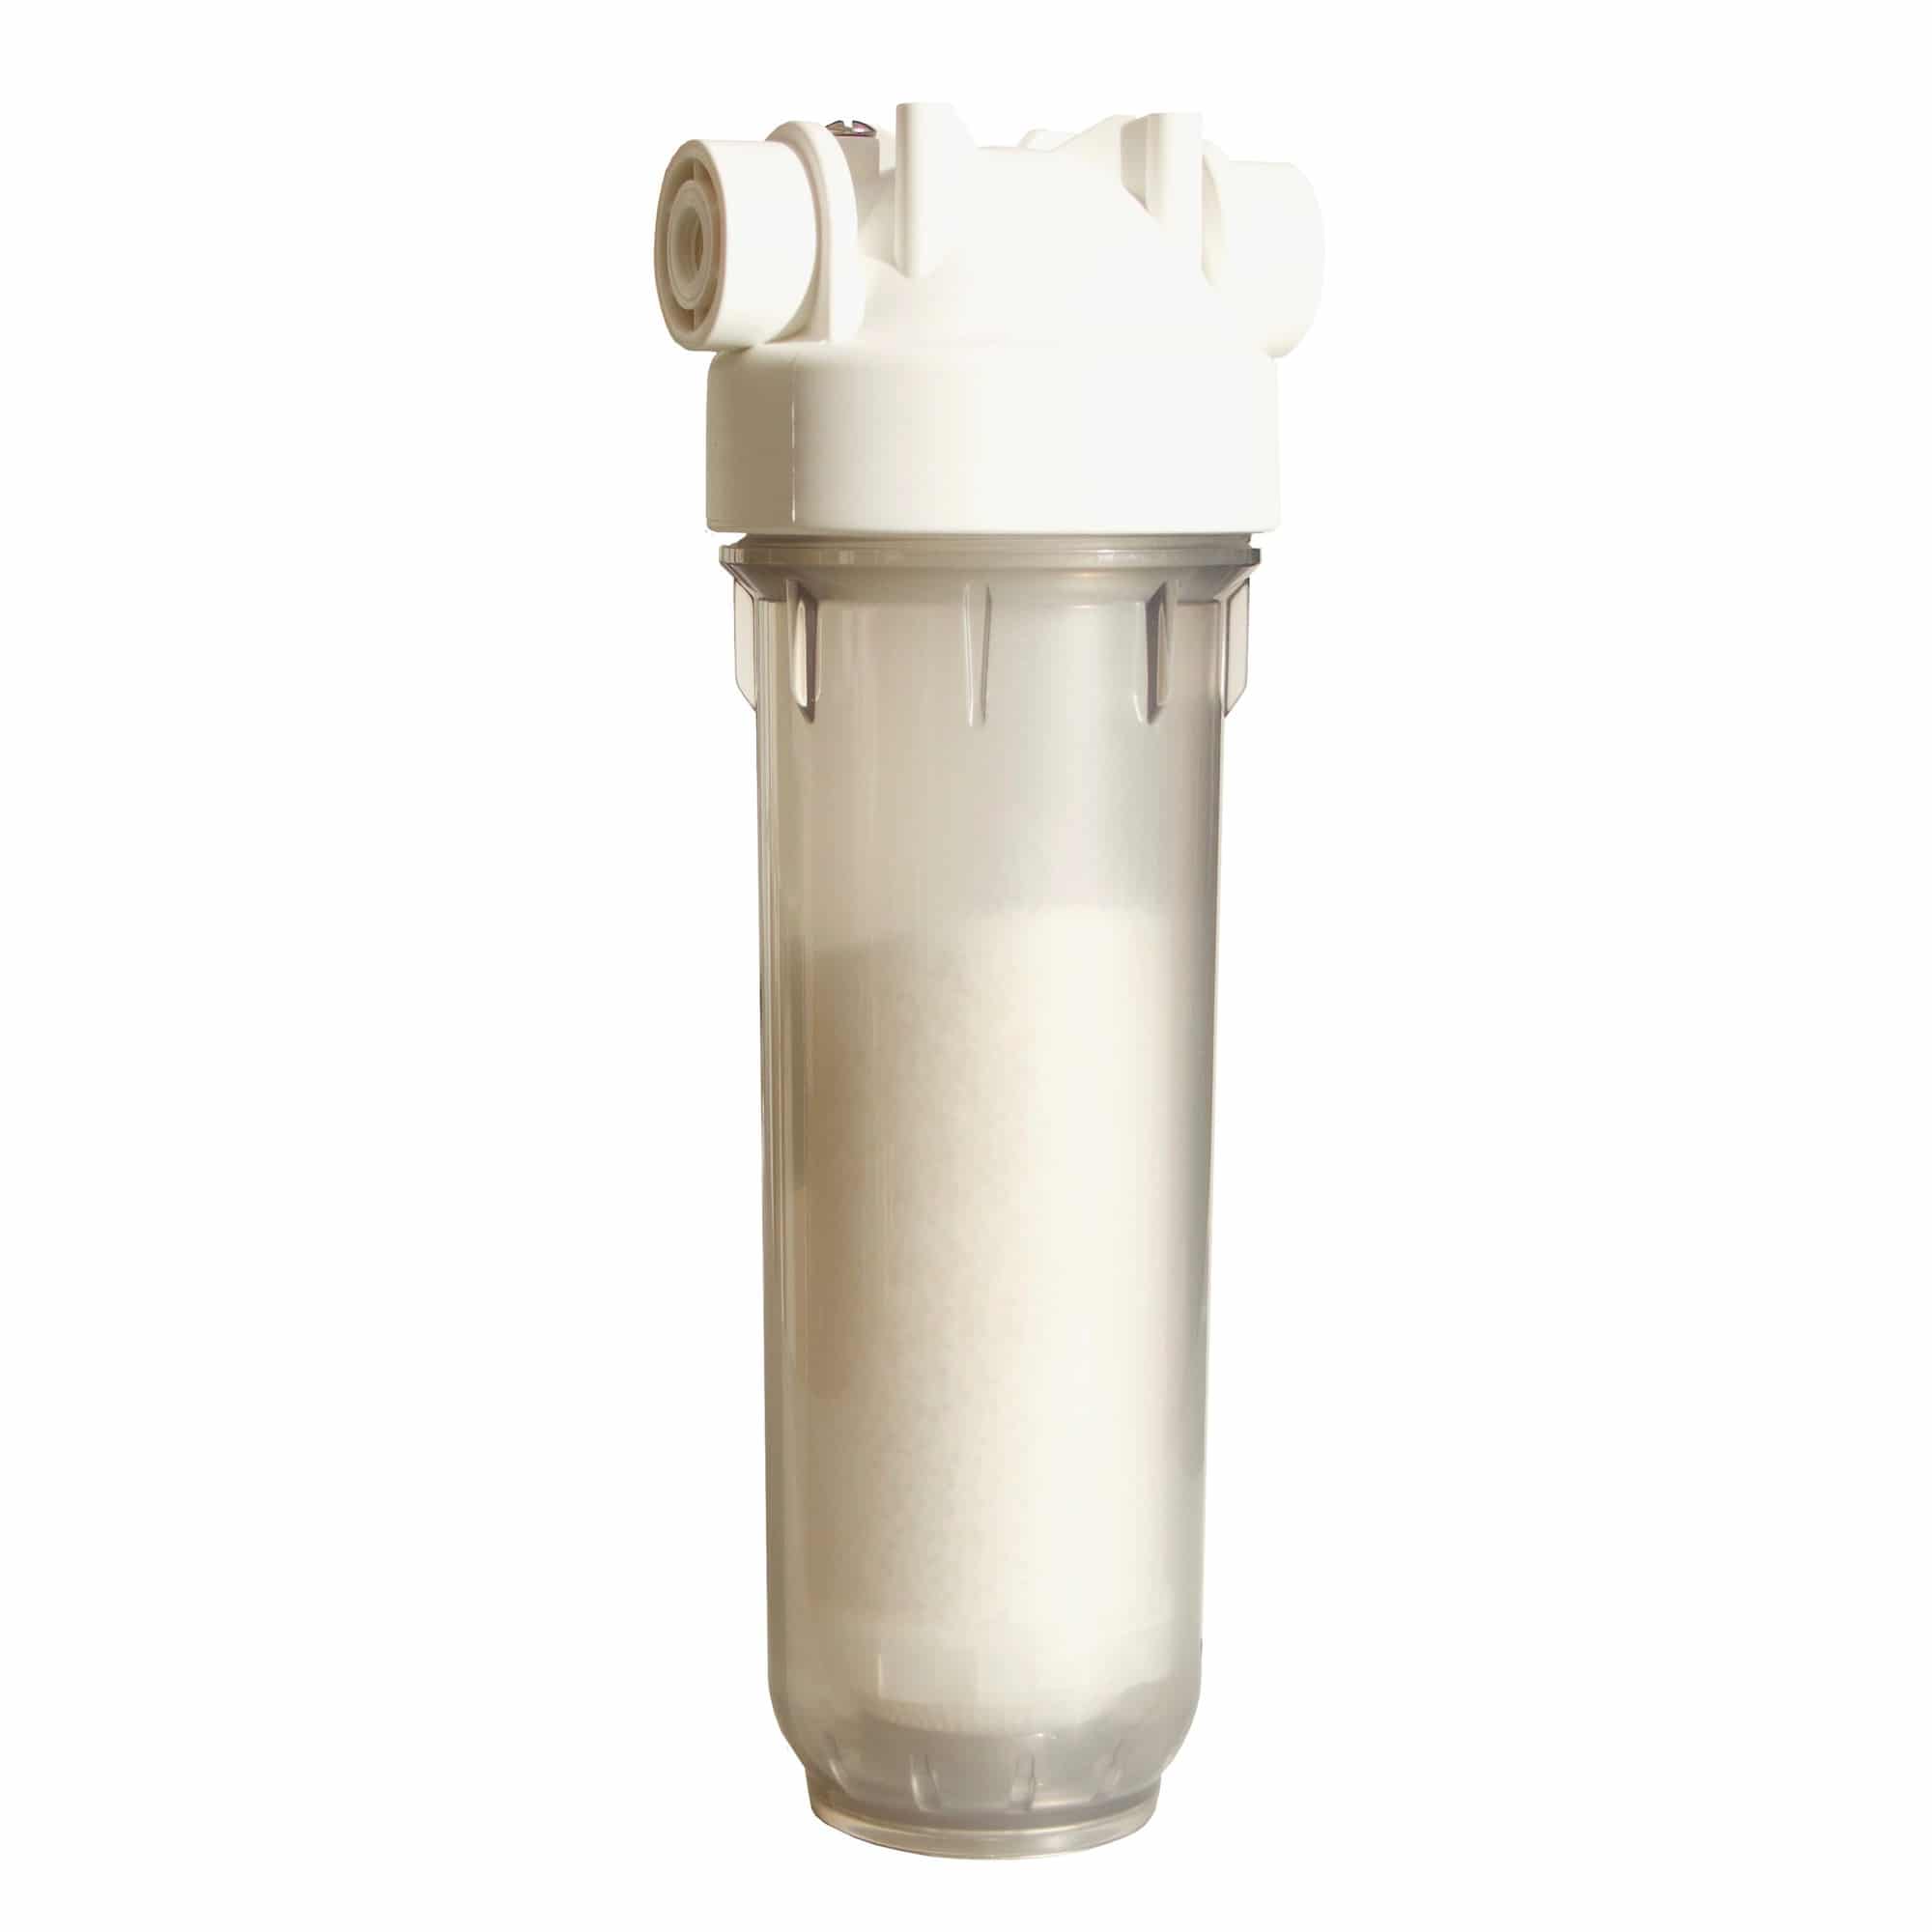 Фильтр смягчает воду. Фильтр умягчитель для воды DME GW-541 1/2. Магистральные фильтры Аква м. Сетчатый фильтр для смягчения воды egua. Магистральный фильтр Леруа.